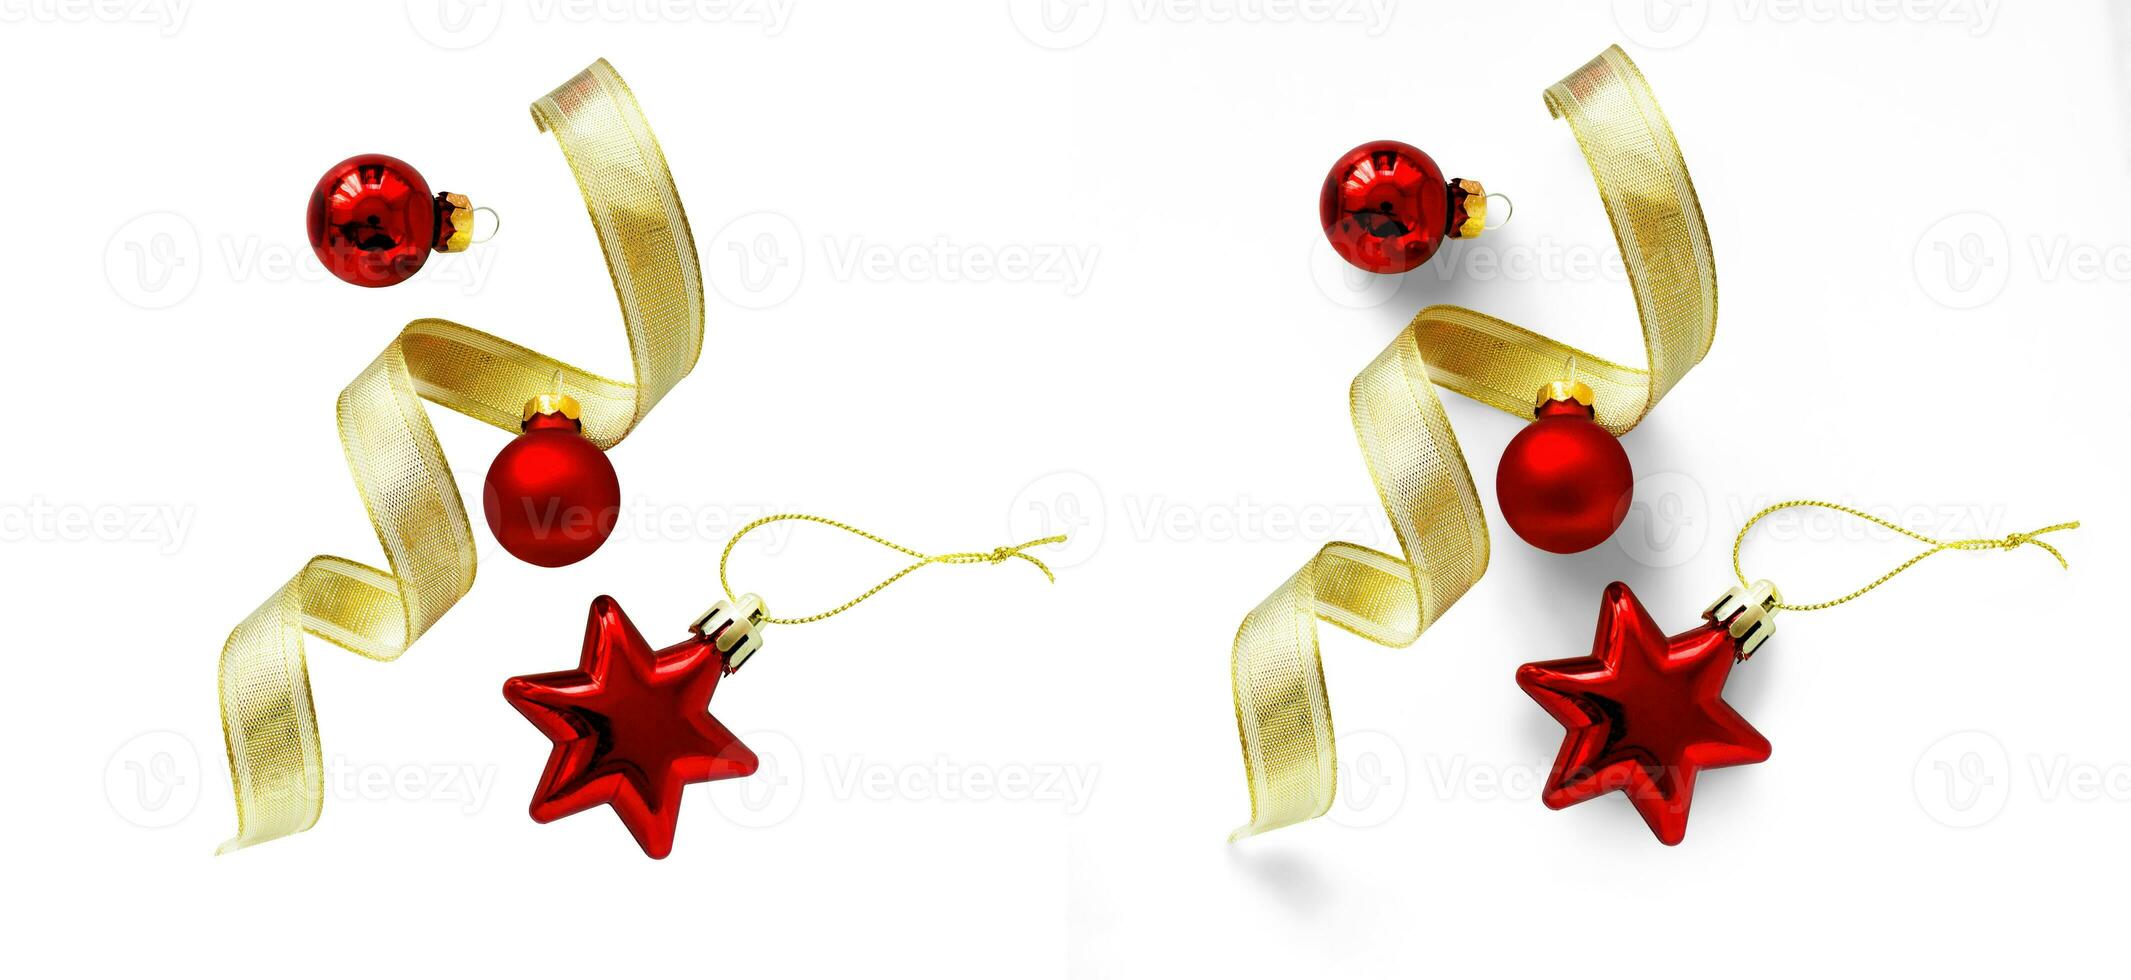 Kerstmis samenstelling met geïsoleerd Kerstmis goud lint en rood Kerstmis boom bal Aan transparant achtergrond. vlak leggen, top visie foto